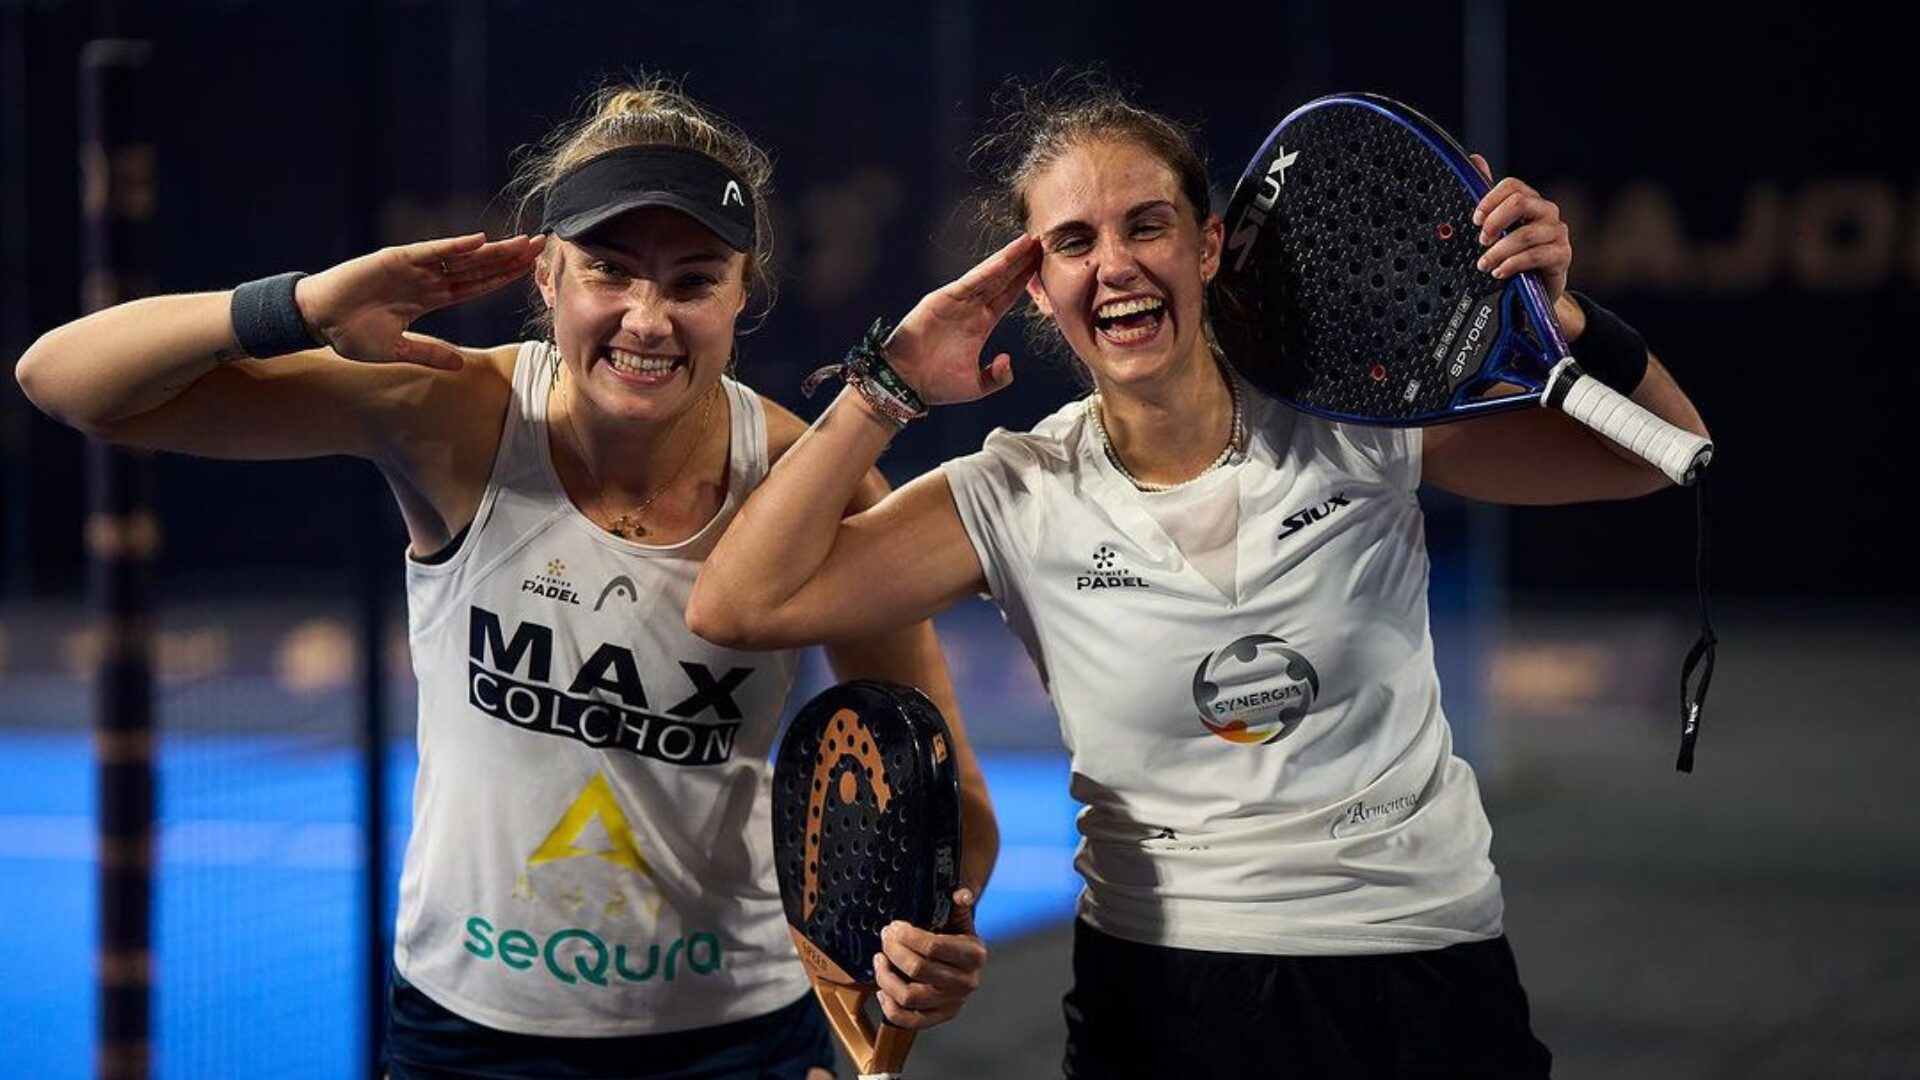 Qatar Major – Sharifova/Carnicero, la coppia sorpresa dei quarti di finale